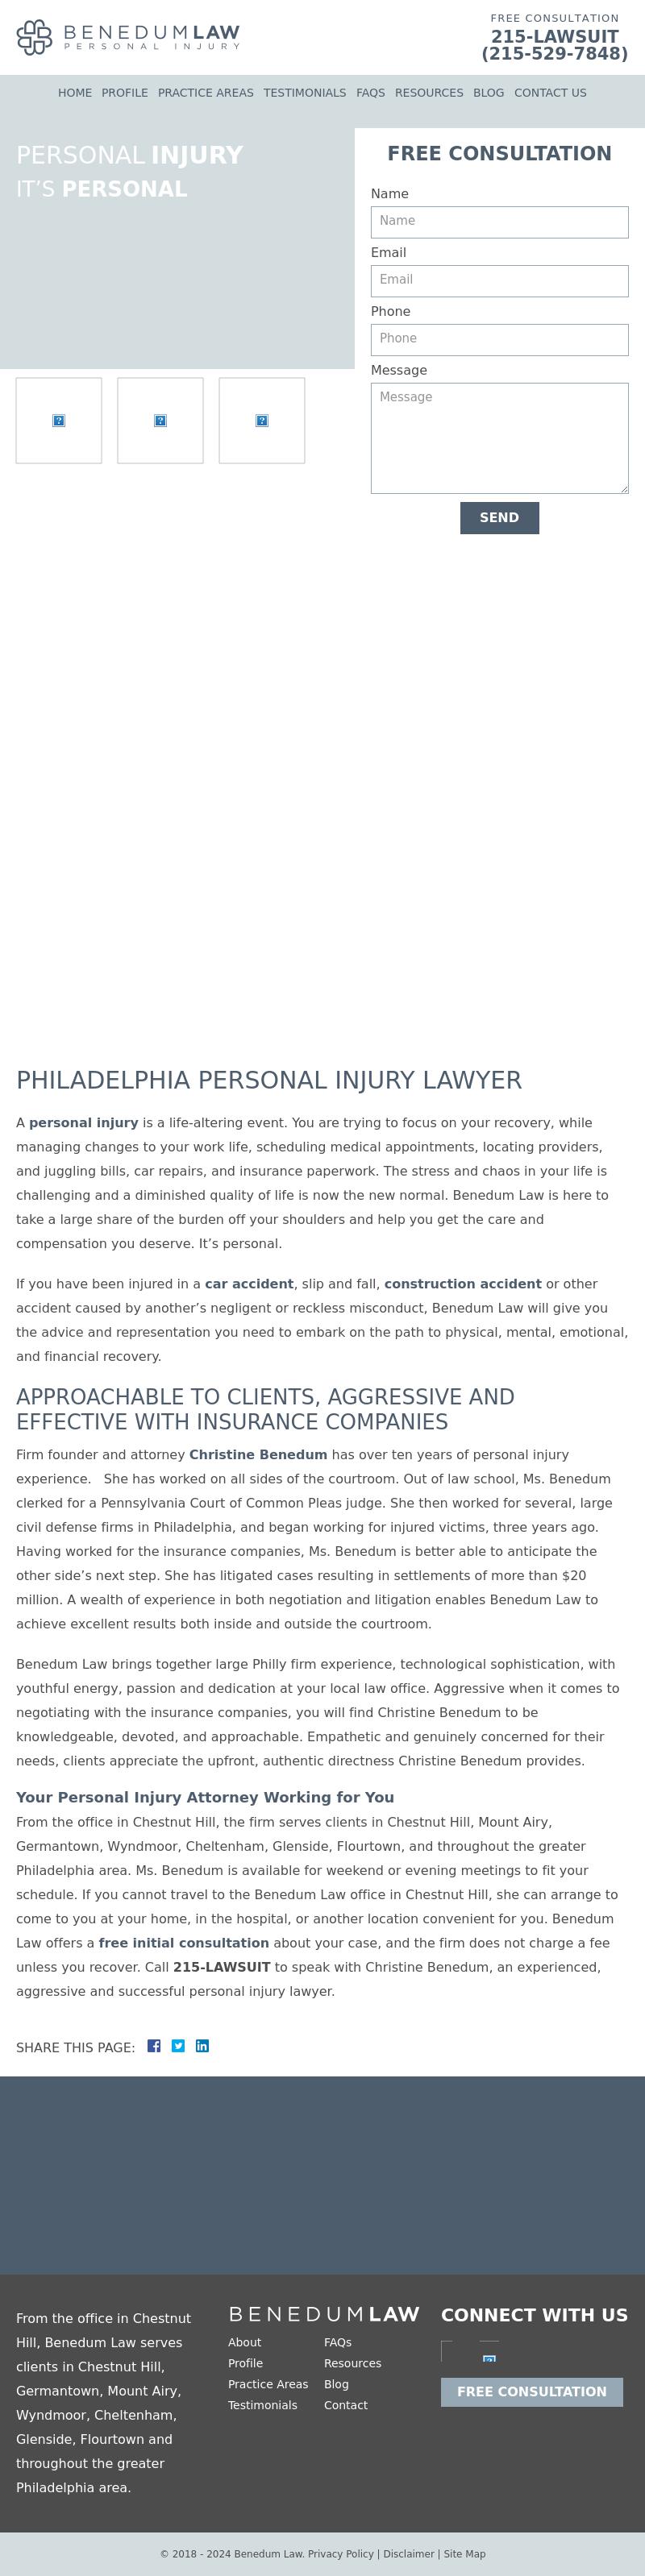 Benedum Law - Philadelphia PA Lawyers